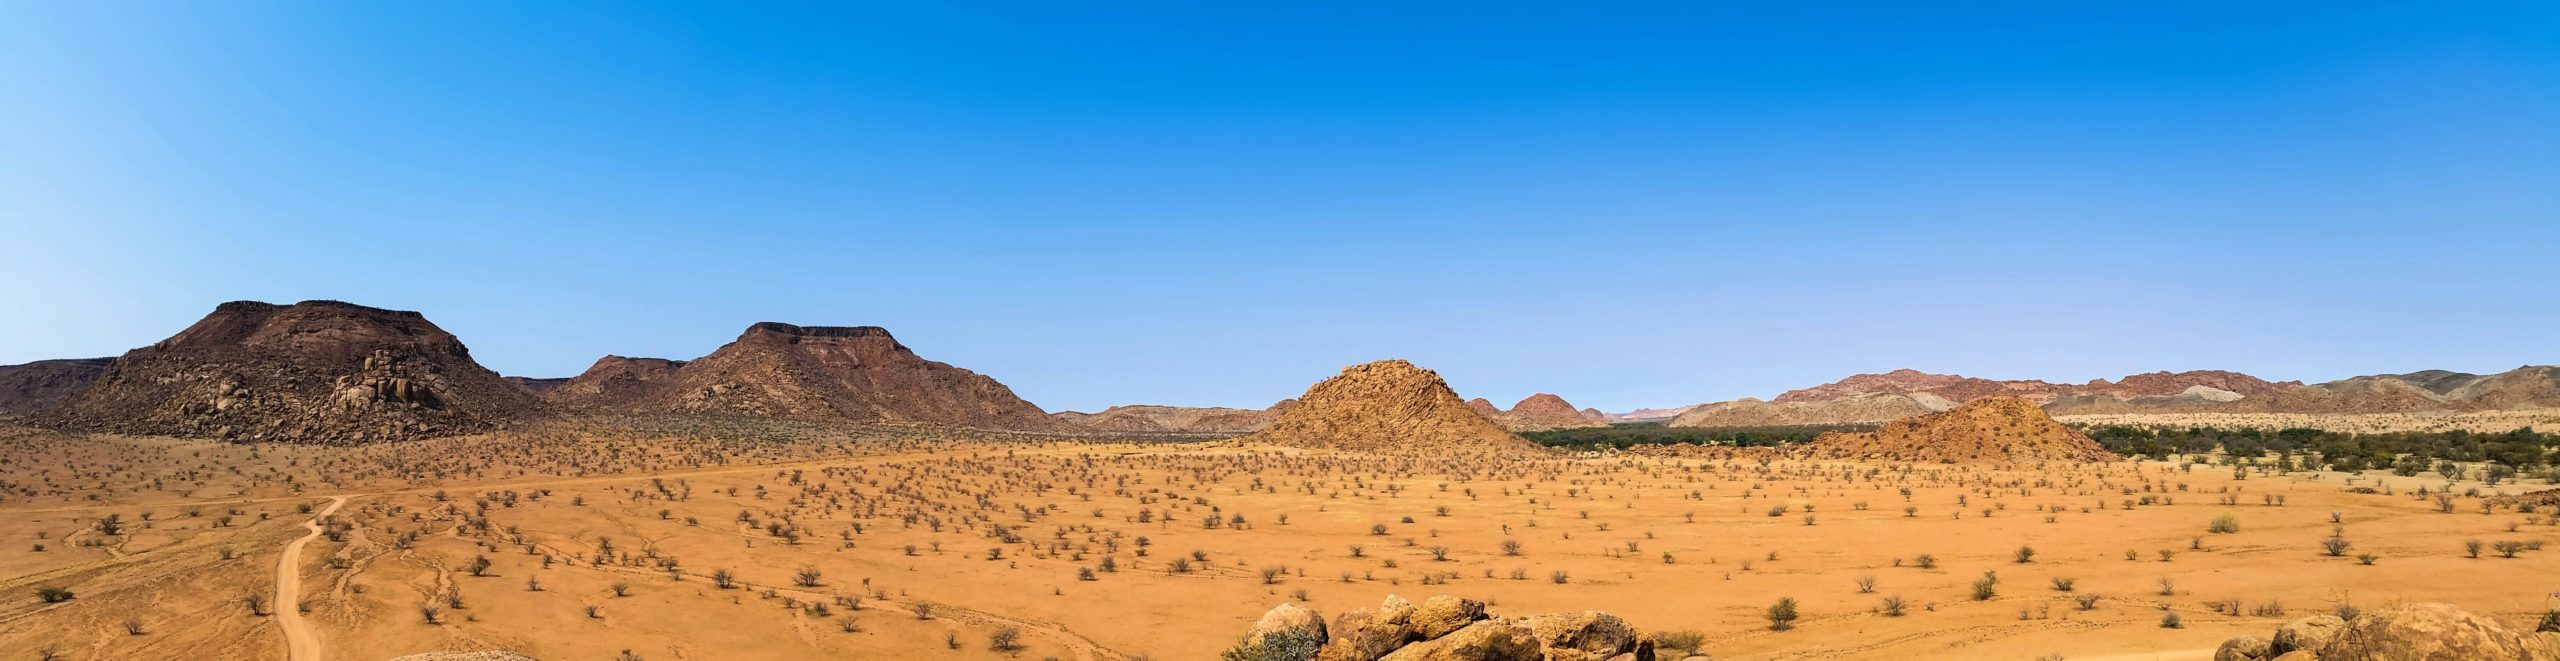 Fotos panorámicas originales: Desierto